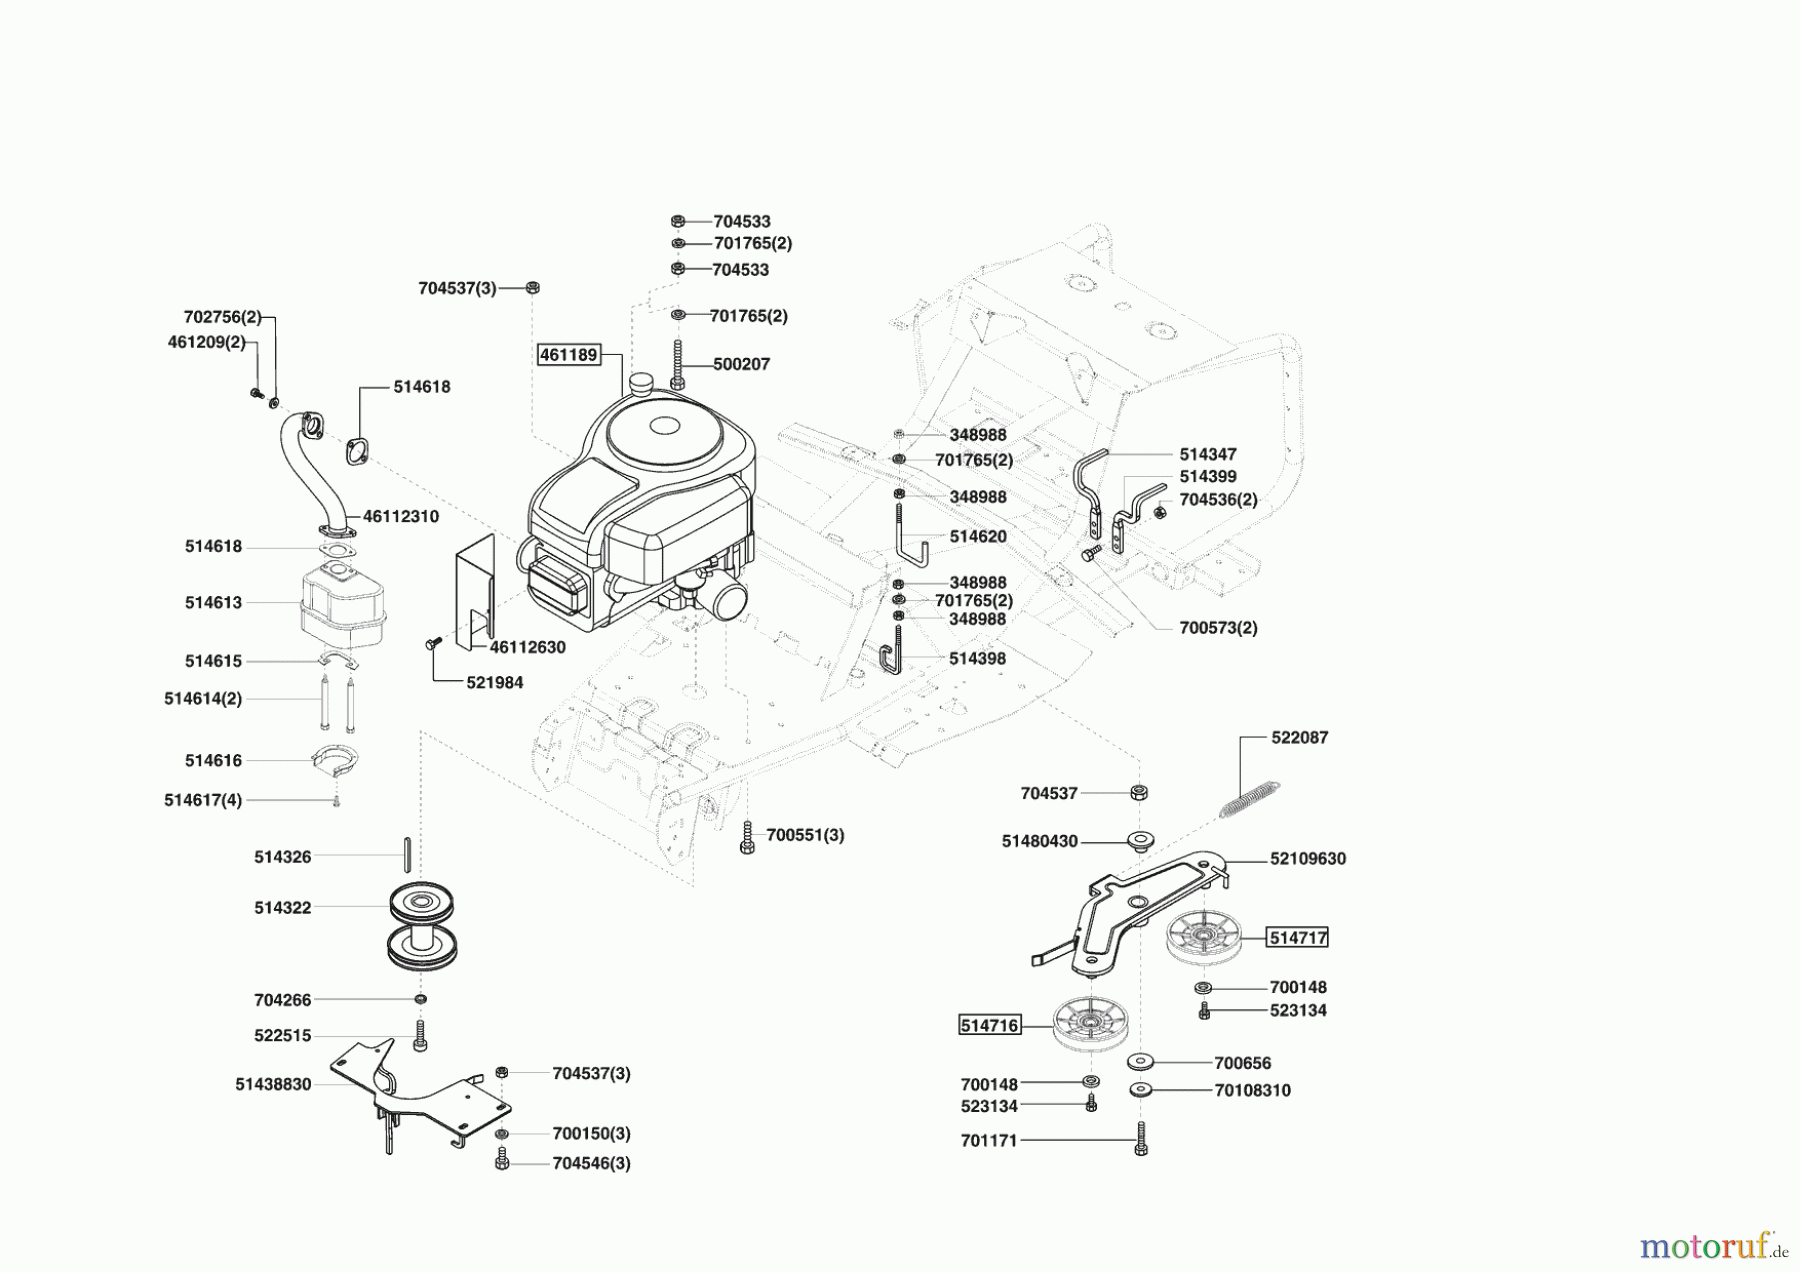  Powerline Gartentechnik Rasentraktor T13-82 Seite 4